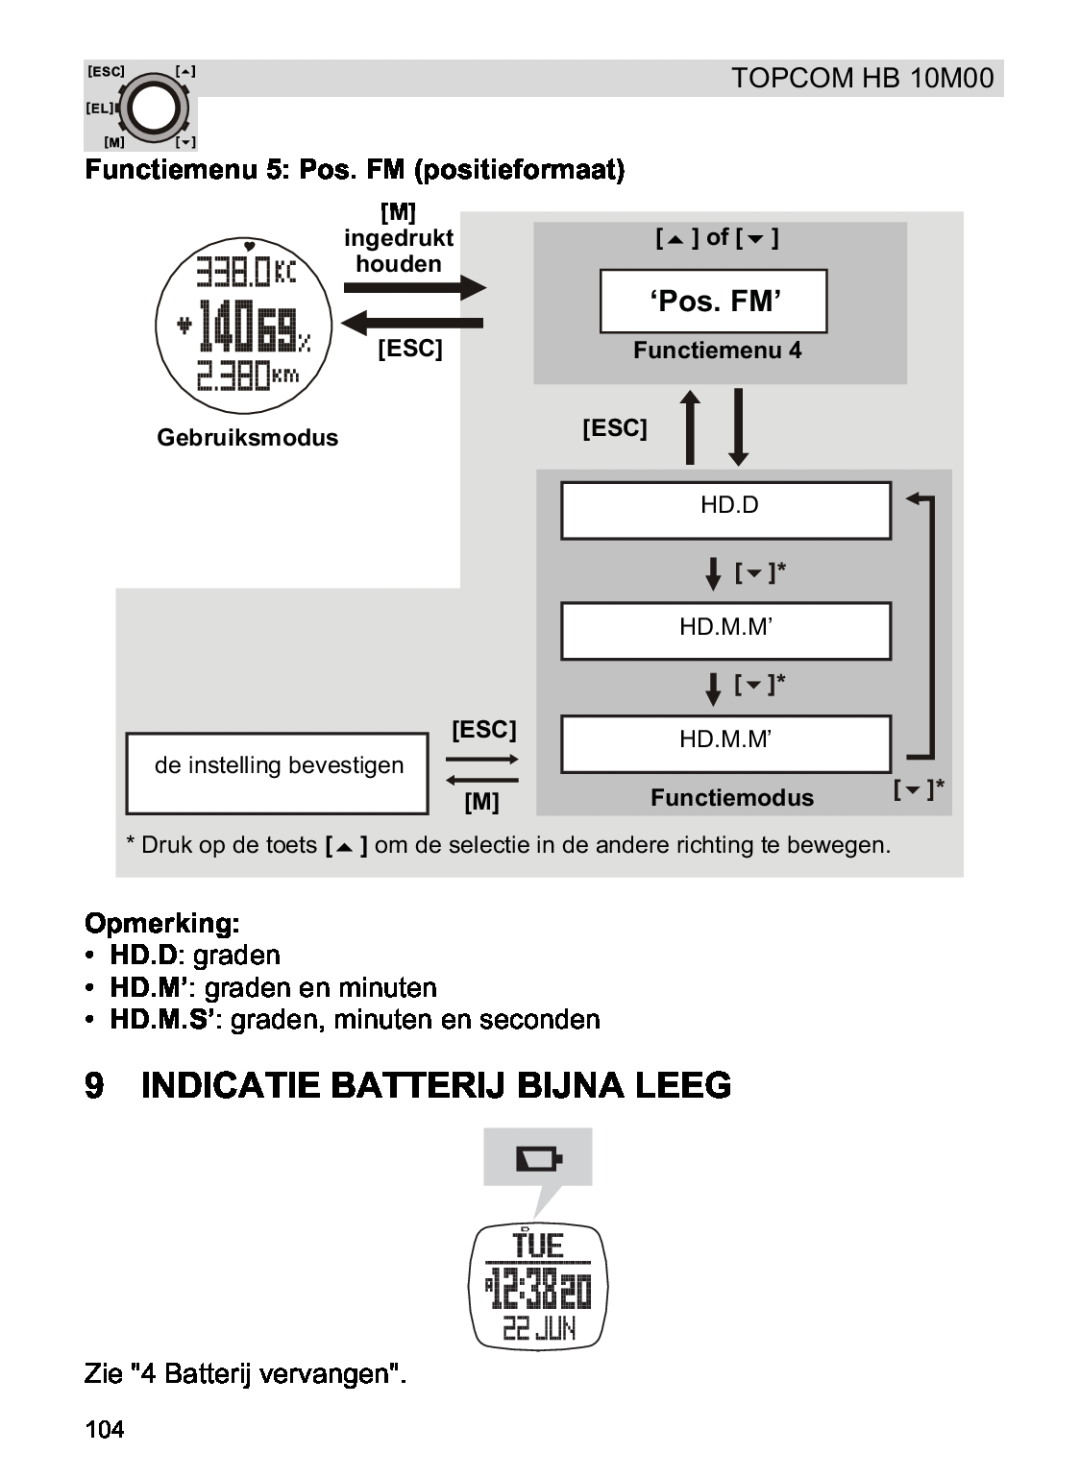 Topcom HB 10M00 manual Indicatie Batterij Bijna Leeg, Functiemenu 5 Pos. FM positieformaat, ‘Pos. FM’, Opmerking 